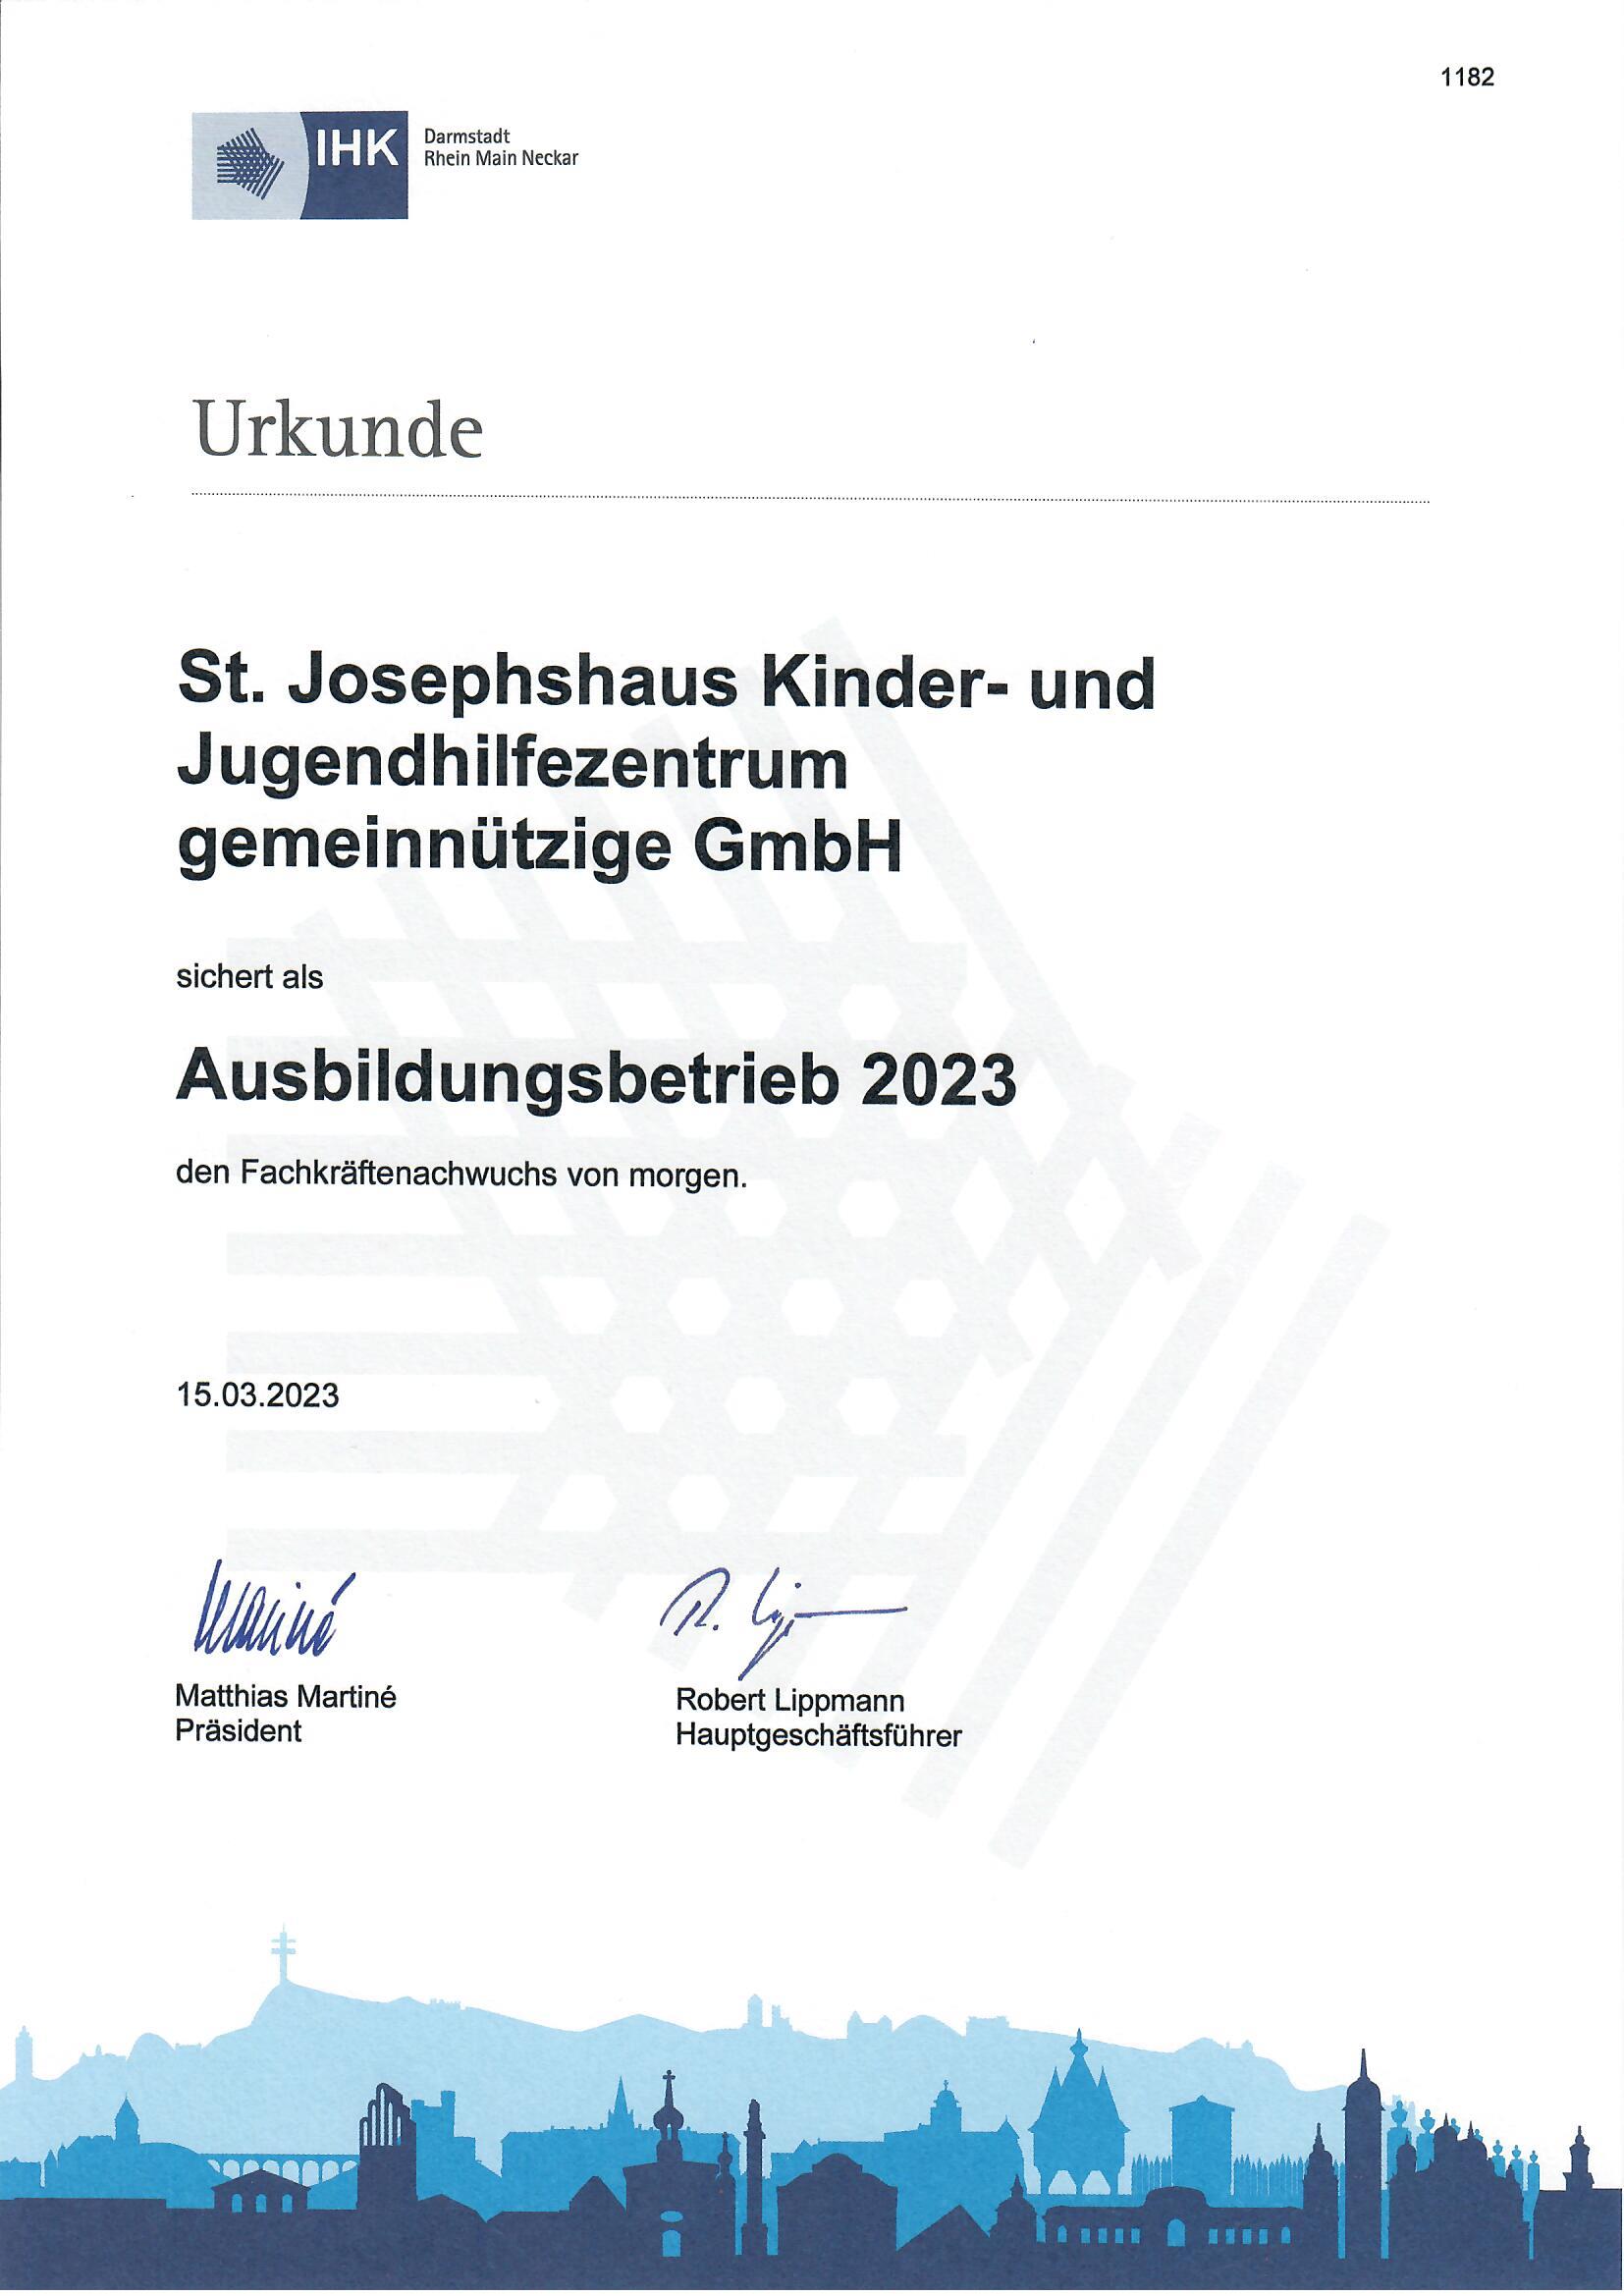 IHK Urkunde Ausbildungsbetrieb 2023